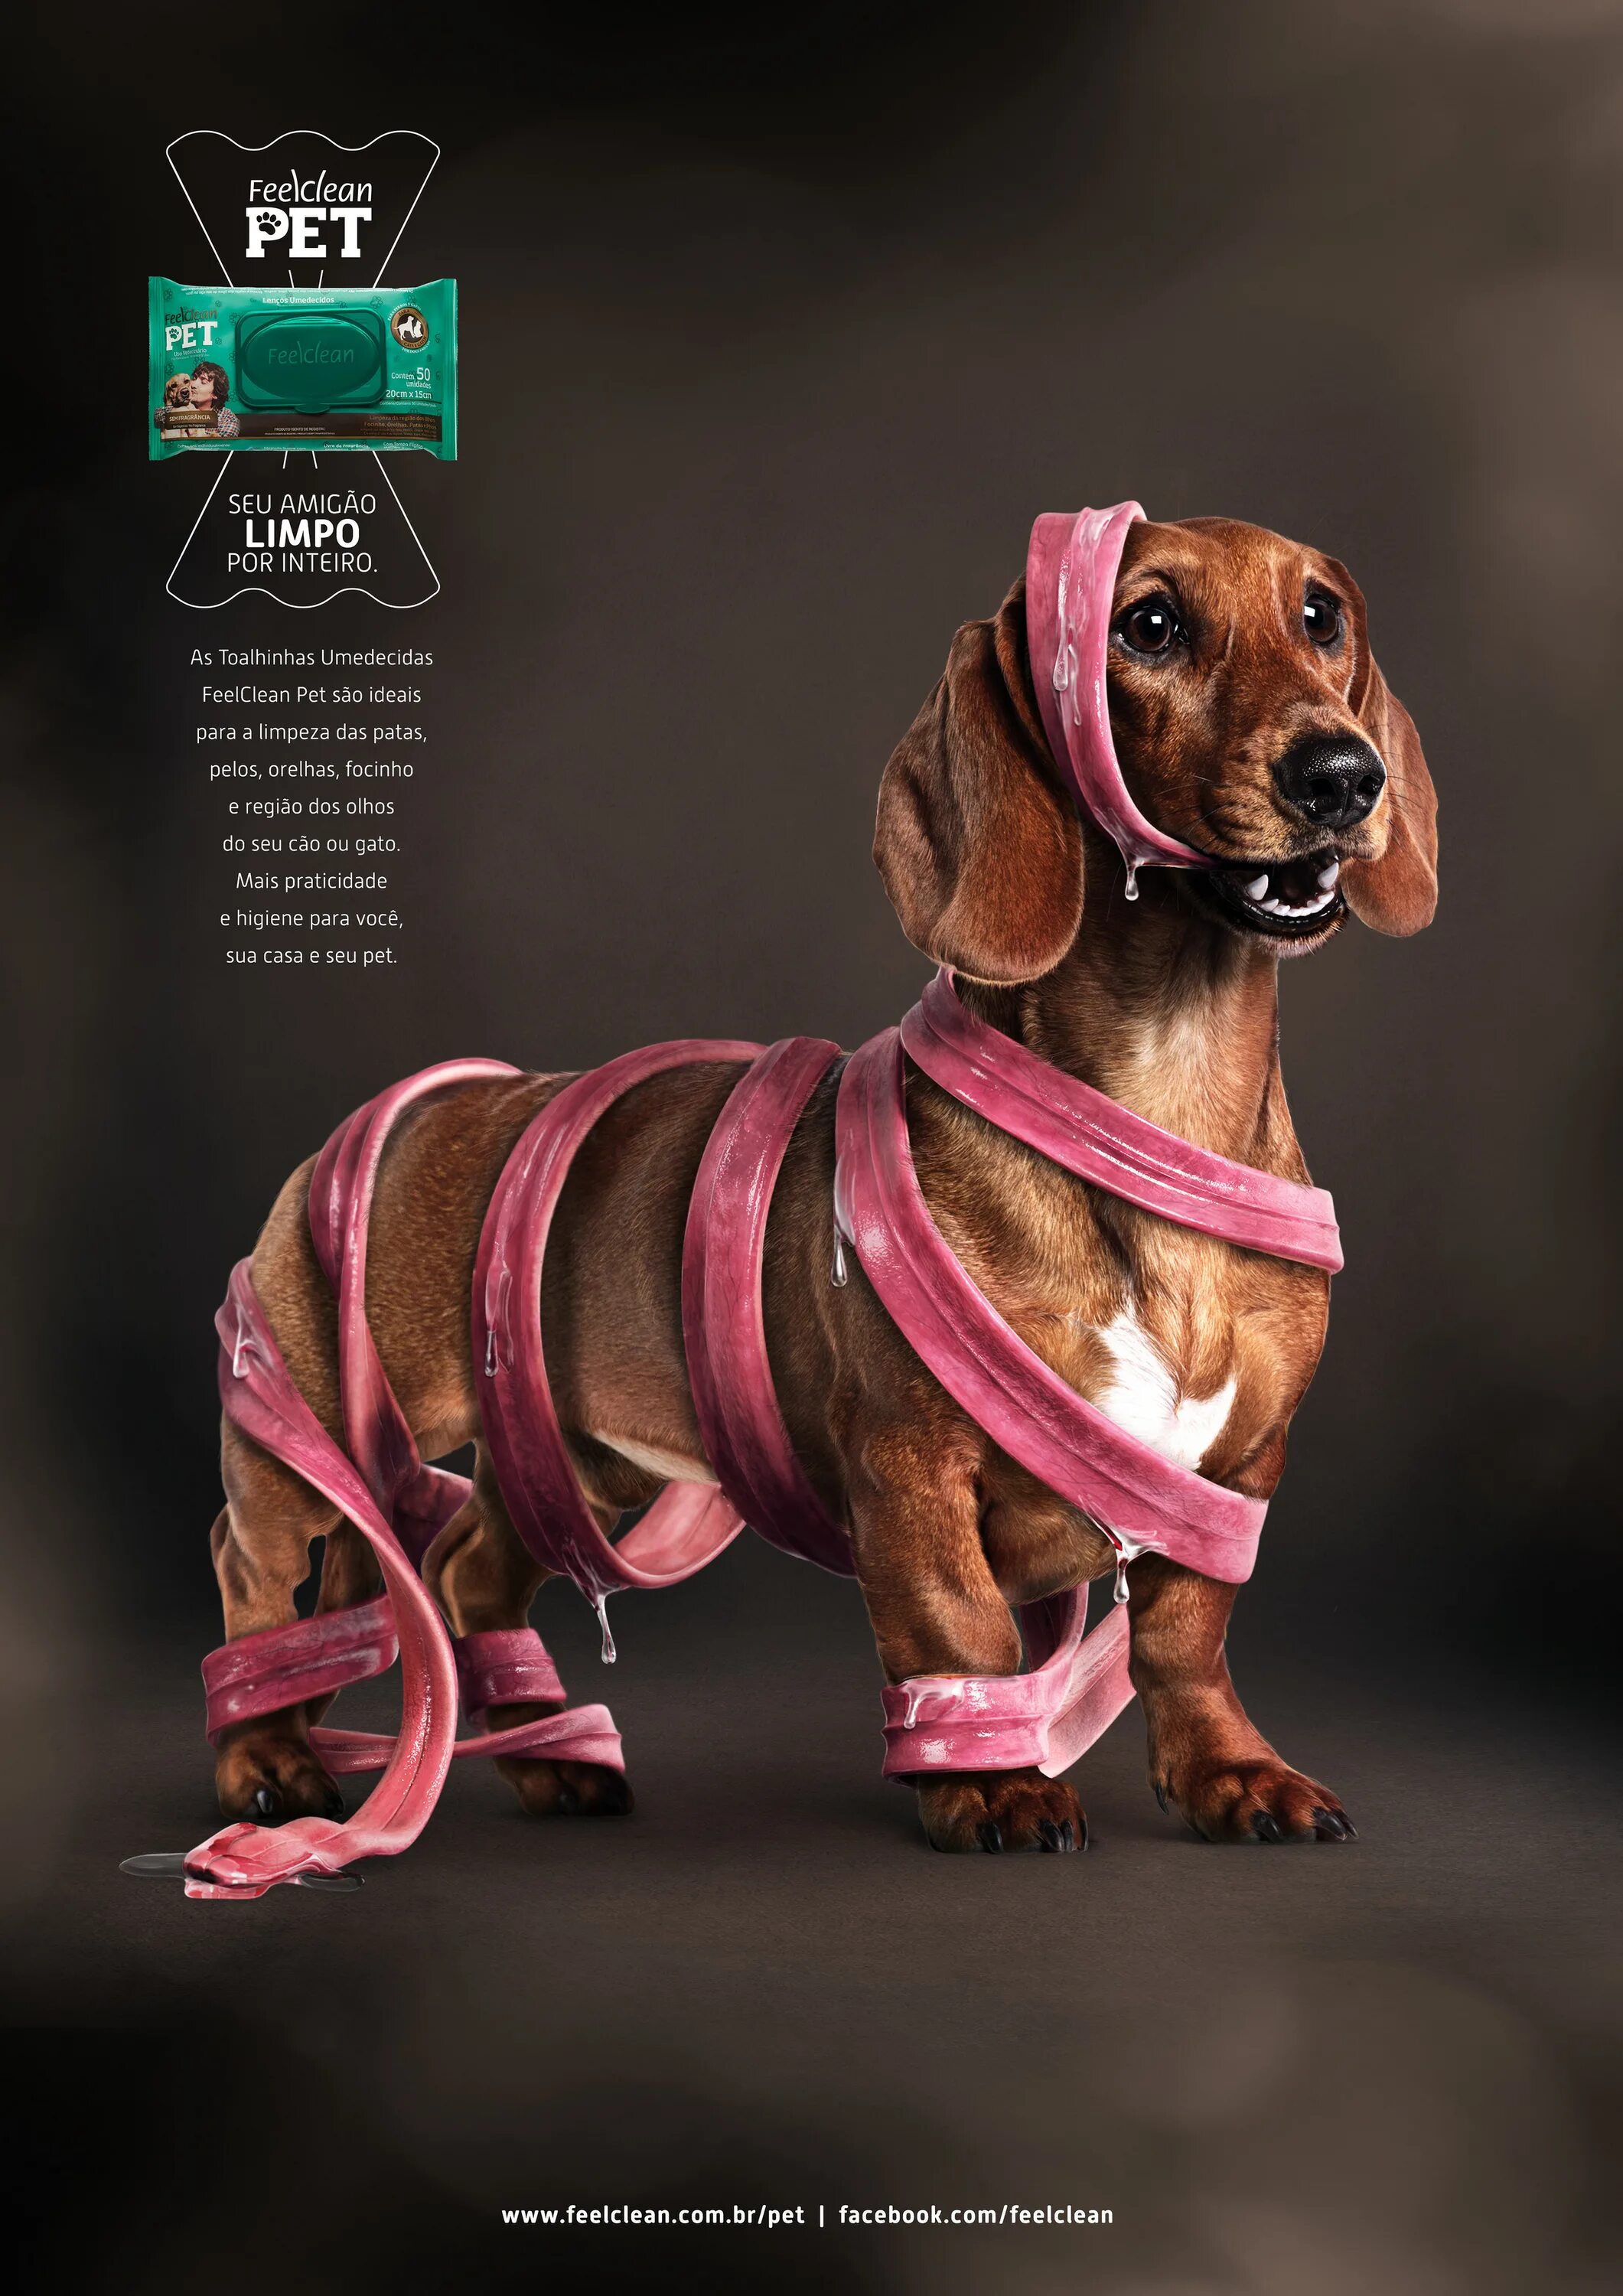 Креативная реклама корма для собак. Креативное животные реклама. Креативные домашние животные. Собака креатив. Рекламу pets